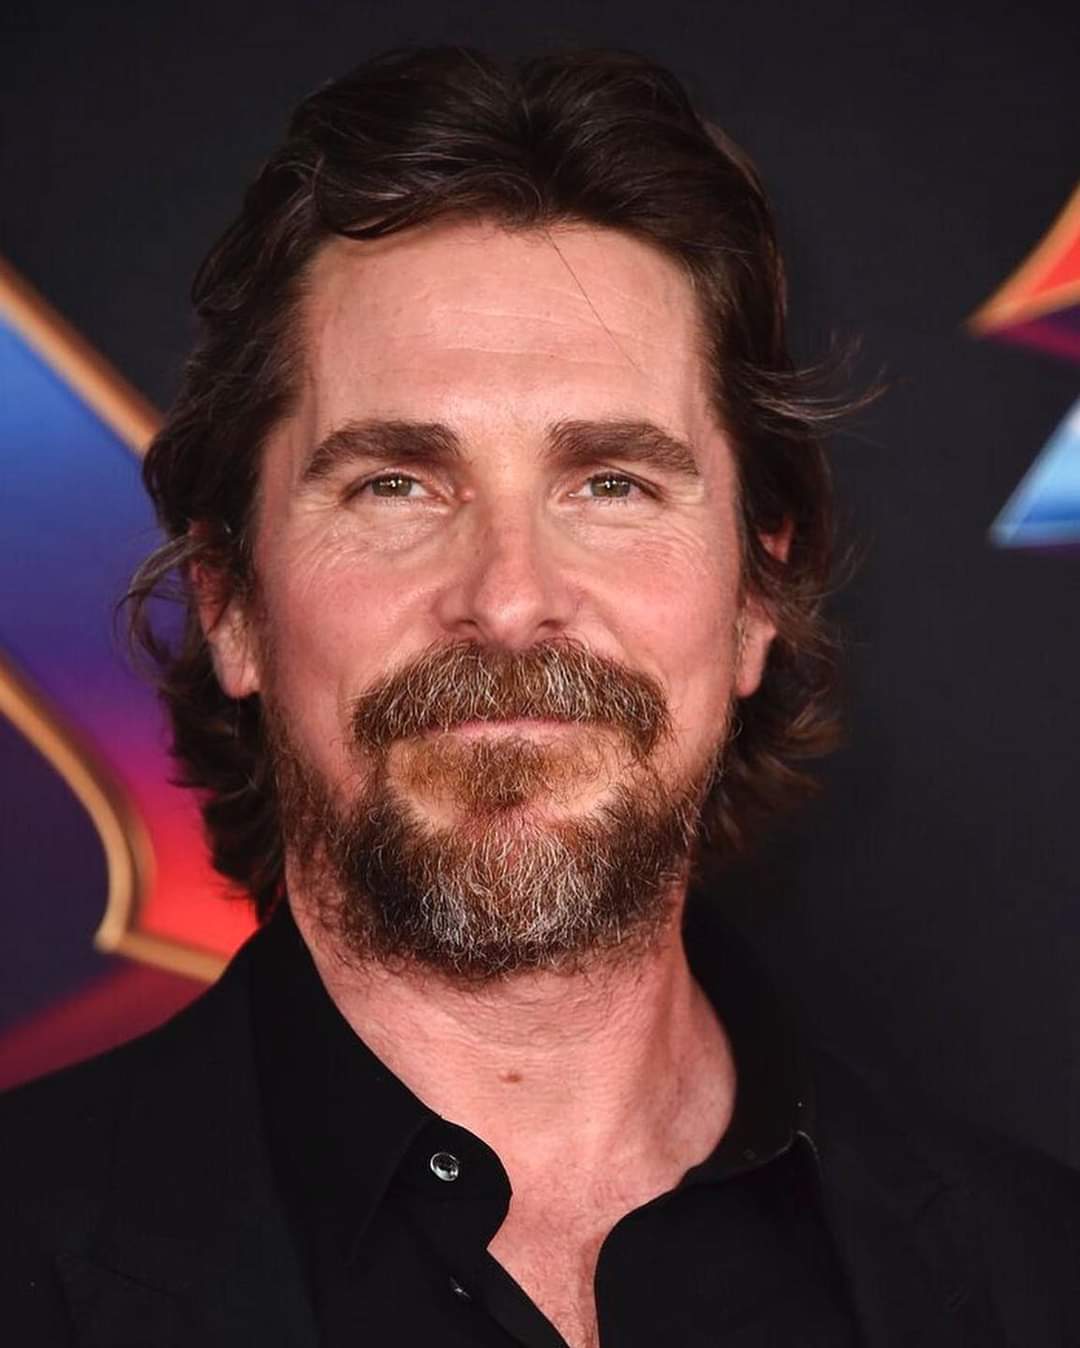 Christian Bale - Wikipedia